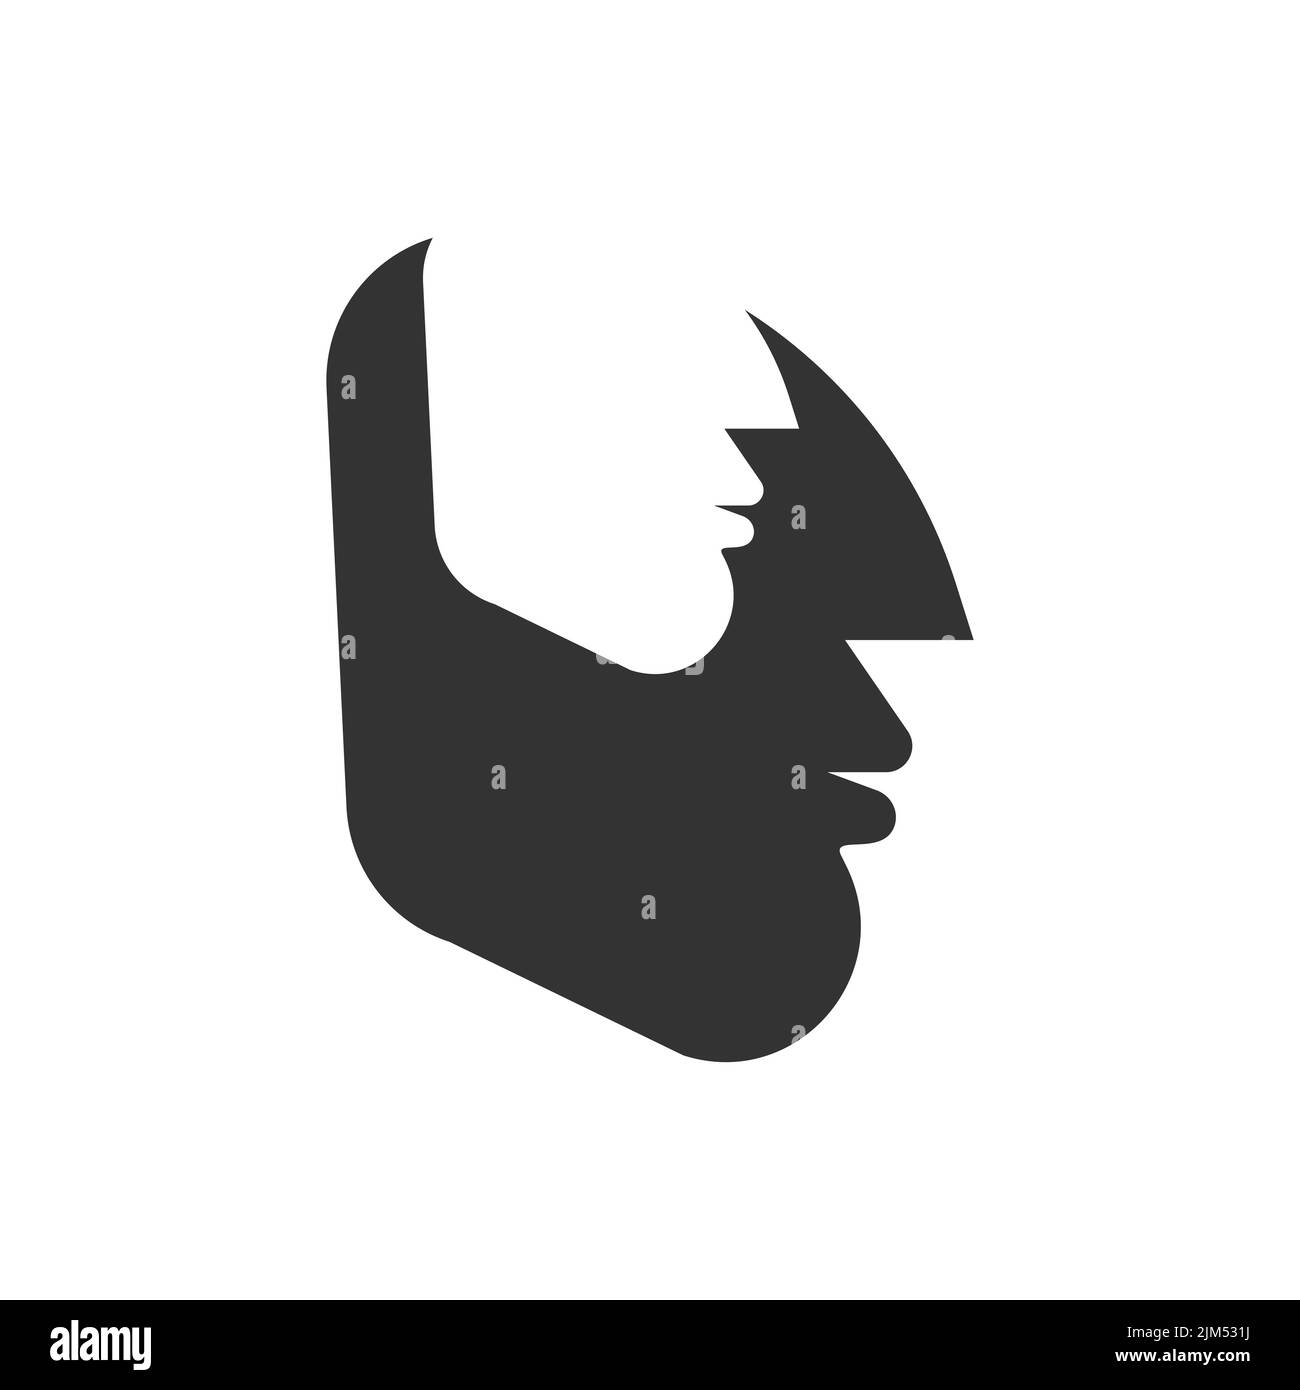 Alter Ego-Logo. Zwei männliche Profile, menschlicher Kopf. Psychologie-Ikone, Dualismus-Konzept Stock Vektor